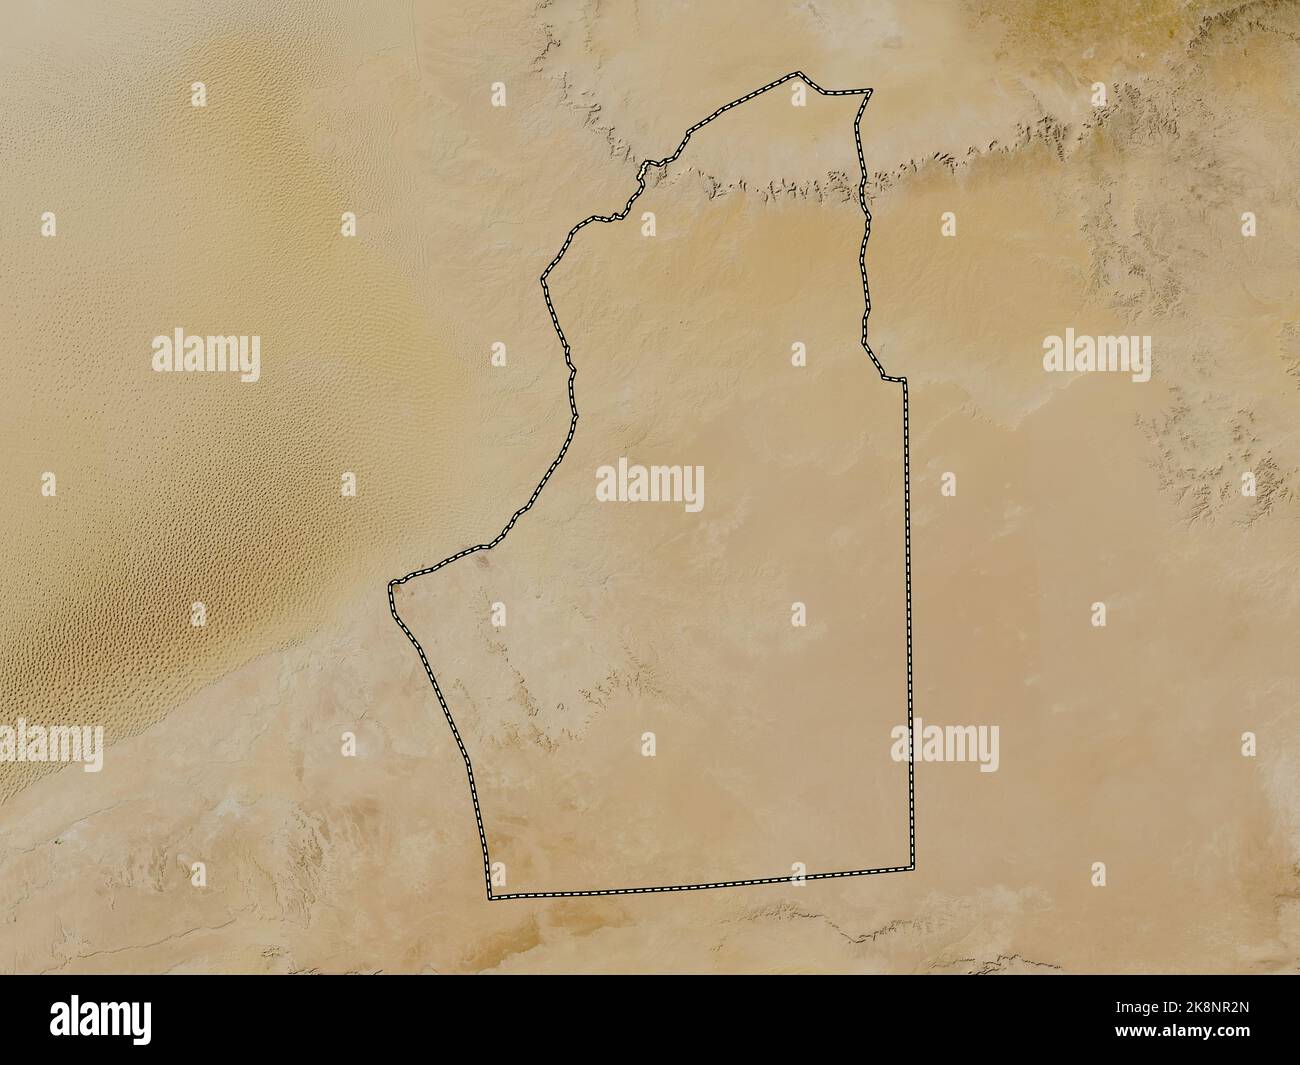 Nalut, Bezirk von Libyen. Satellitenkarte mit niedriger Auflösung Stockfoto